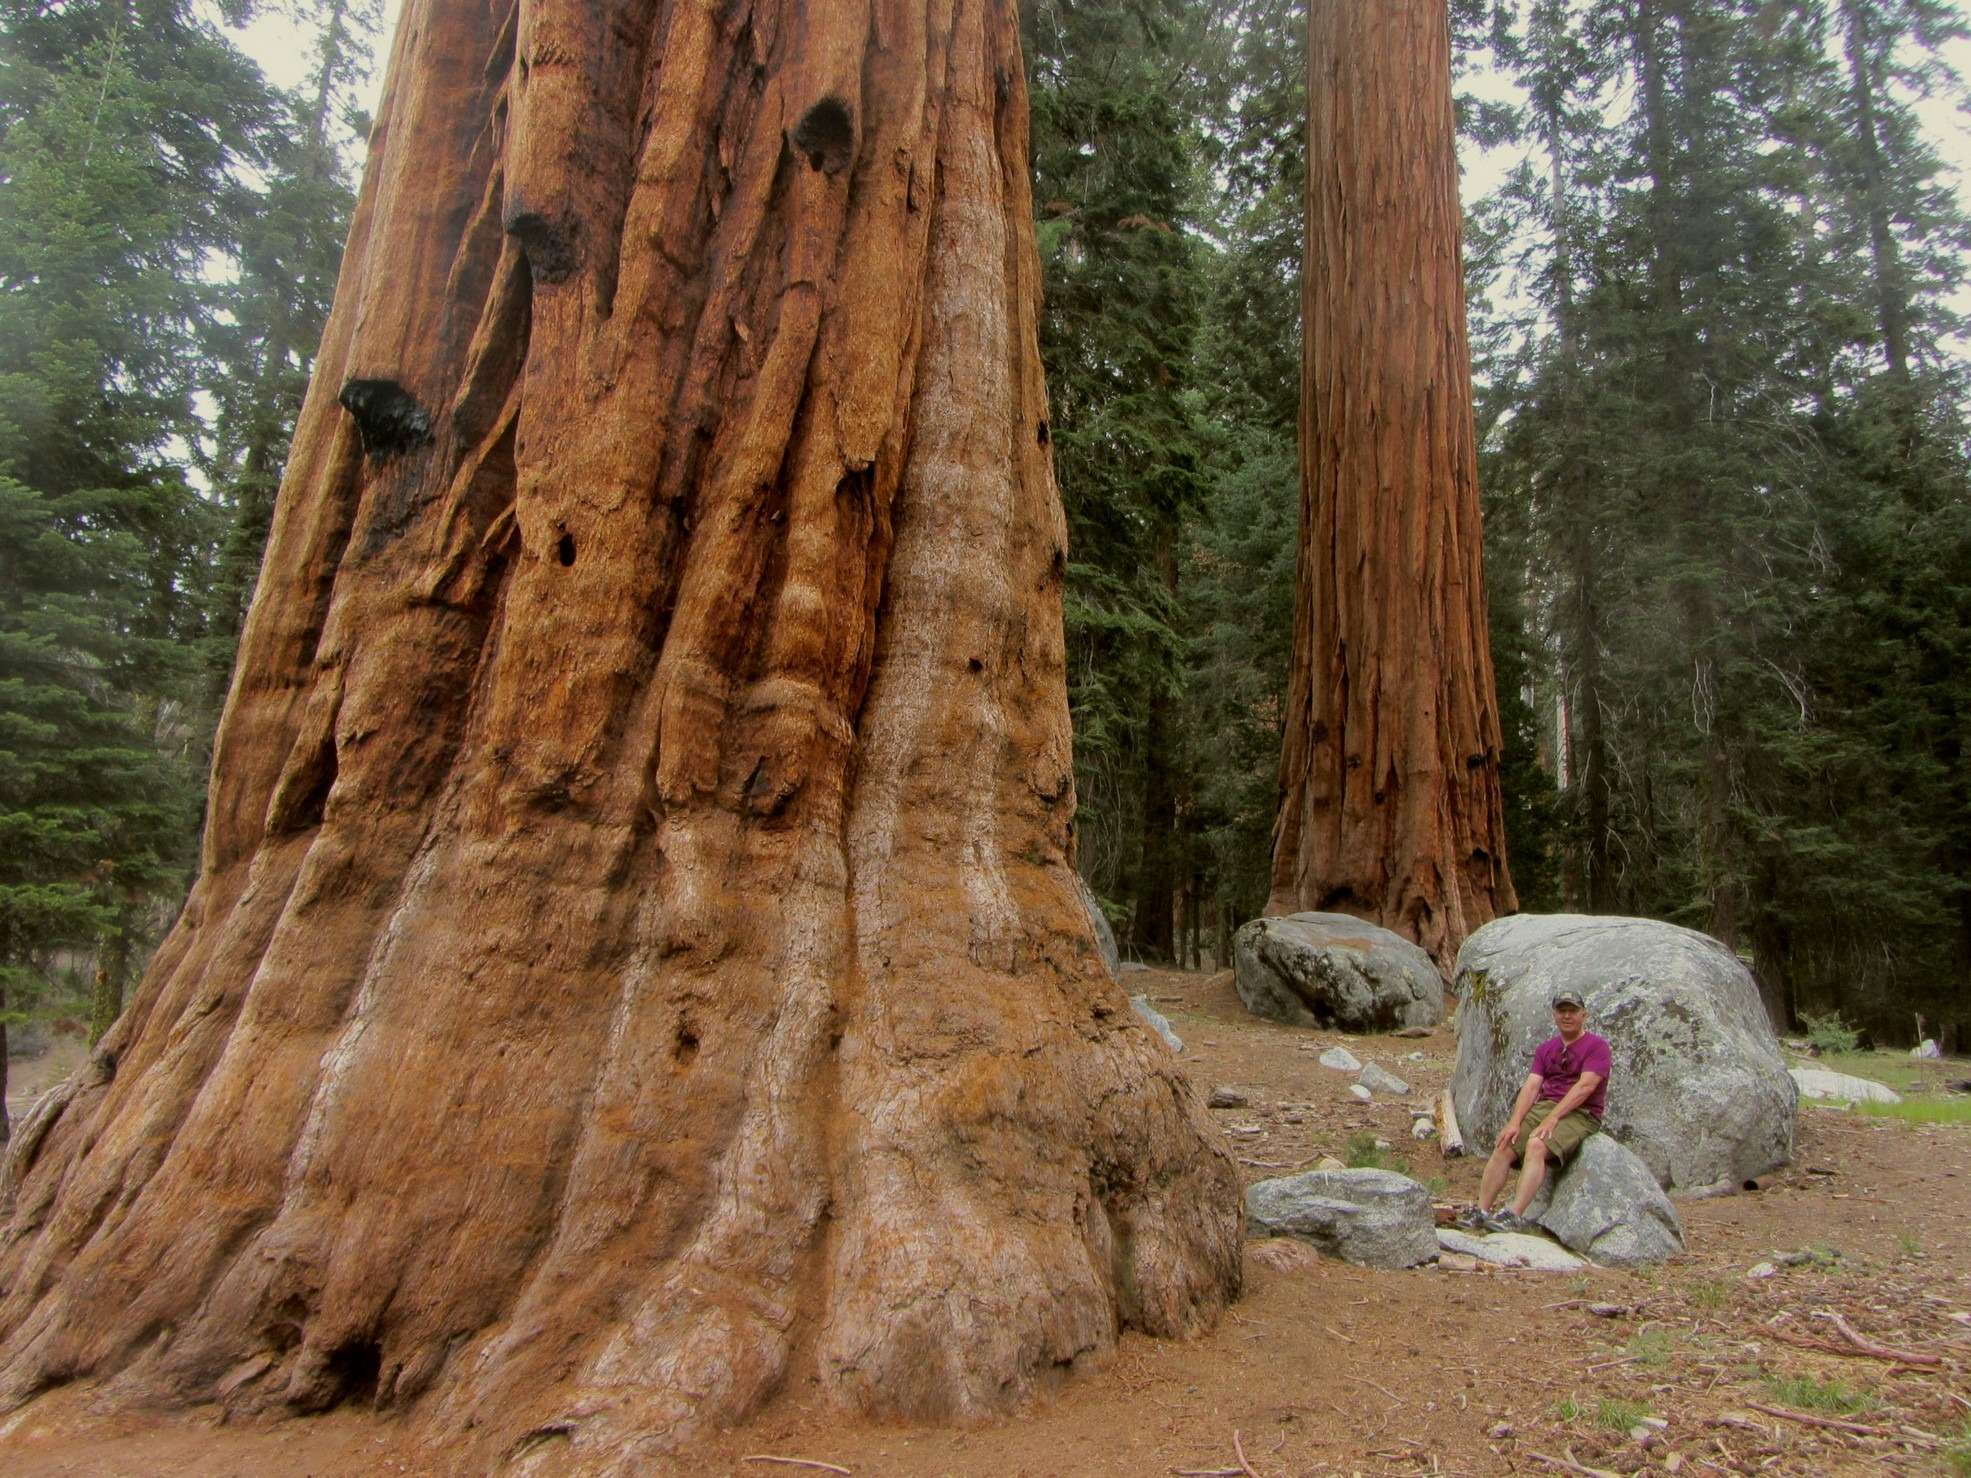 За гигантскими секвойями мы отправились в Секвойя Парк (Sequoia Park). Эти динозавры от флоры - настоящее чудо света. Автор в роще секвой
Толщина коры этих гигантов - два фута (60 см). Эта кора, как шуба, хранит деревья и от морозов, и от пожаров. Иначе как бы они прожили тысячелетия? А еще секвойи обладают удивительным свойством: их древесина не гниет. Однако именно это свойство чуть не погубило великанов. Когда в середине 19-го века белые люди впервые узнали о секвойях, они принялись валить огромные деревья и изготавливать из их древесины обшивку кораблей, фундаменты домов, да и сами дома. Ведь дерево вечное, не гниет! И лишь в 1890 году государство основало национальный заповедник секвой. Все сохранившиеся деревья-великаны были взяты под охрану.
